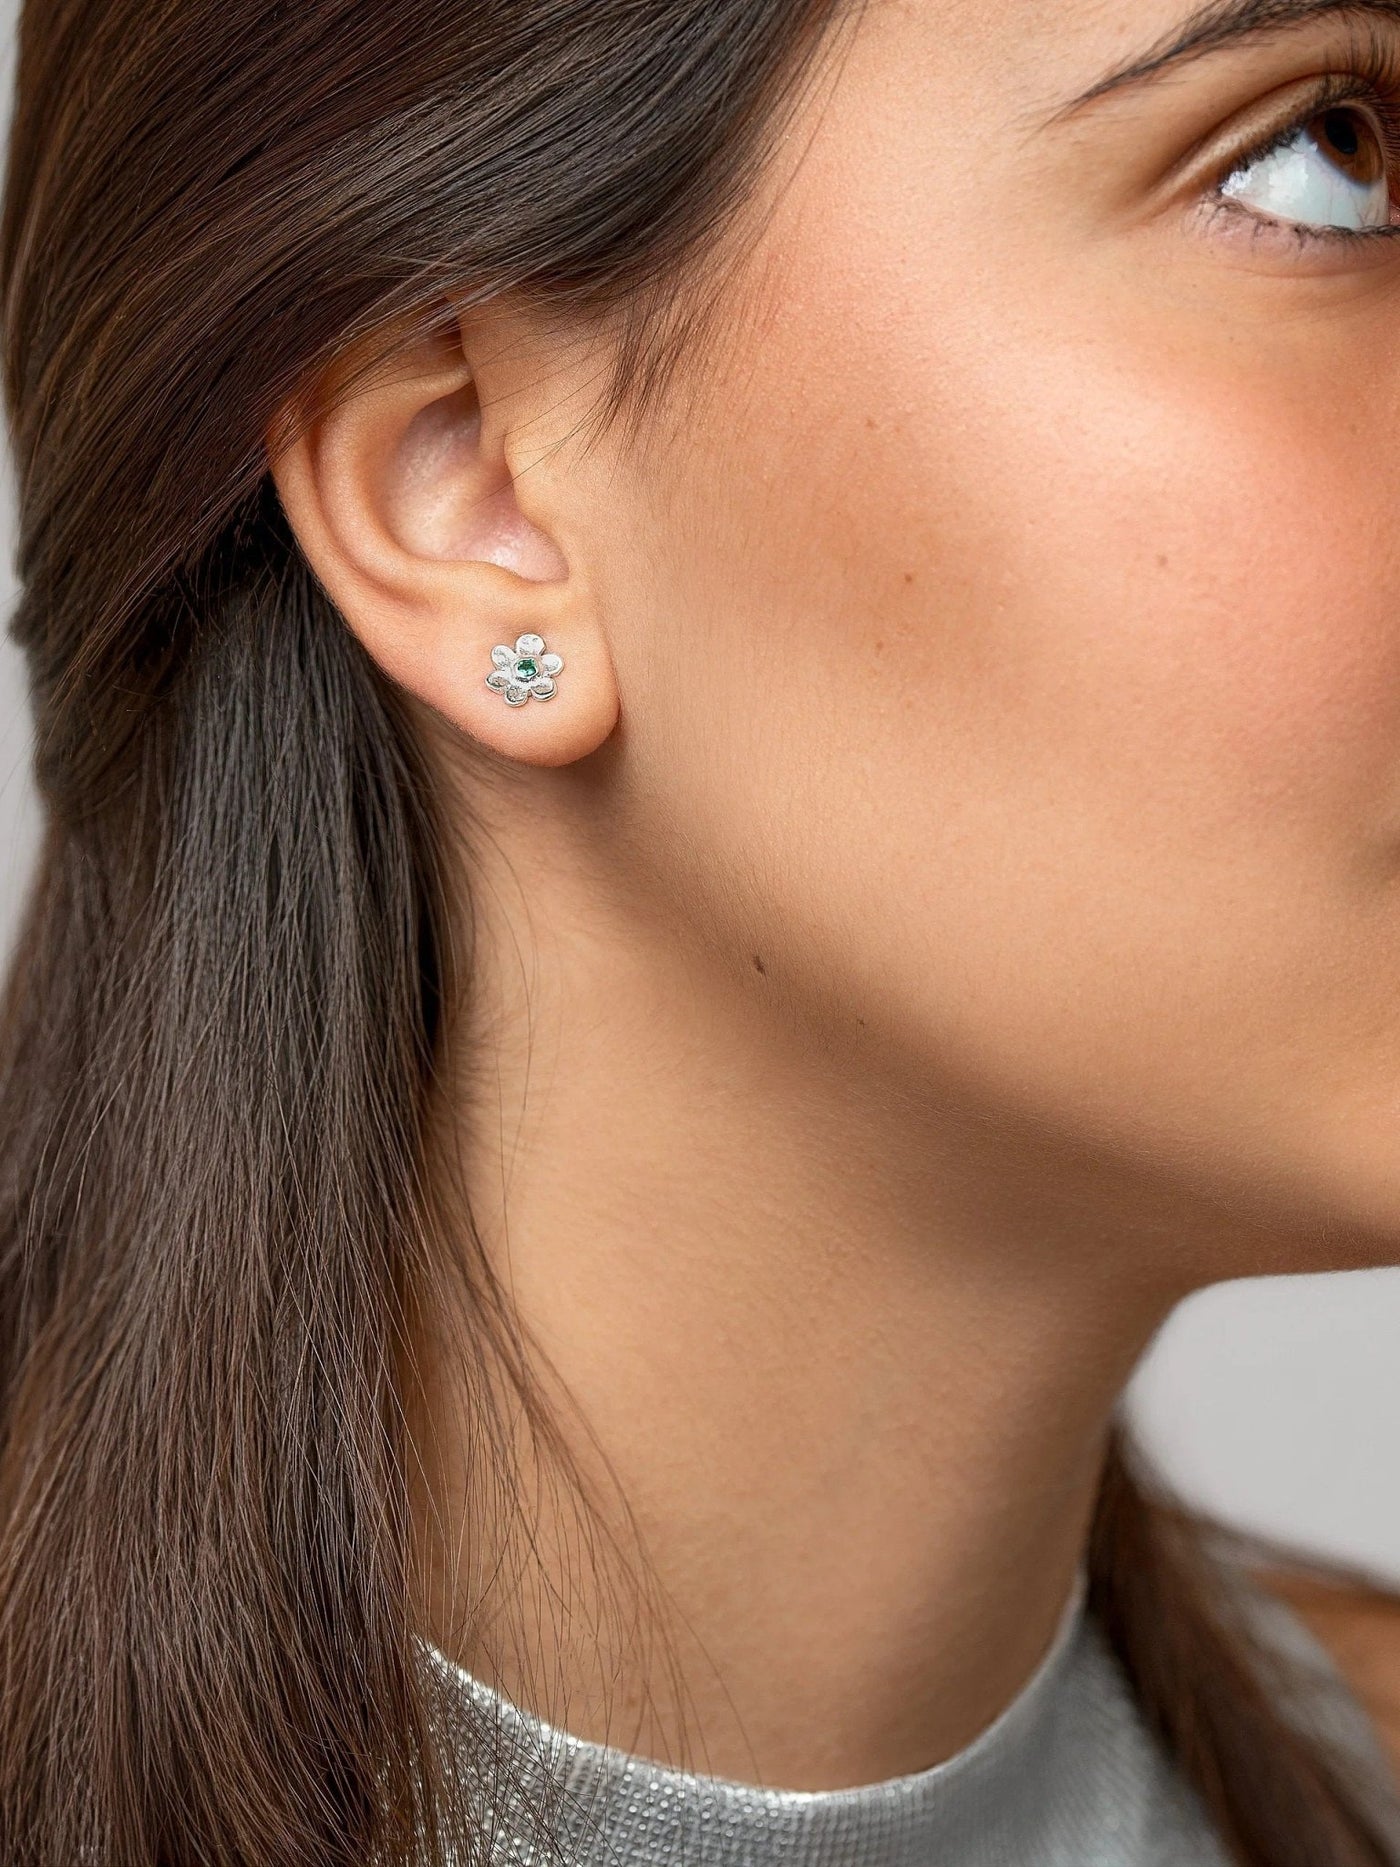 Iva Daisy Stud Earrings - 925 Sterling Silver Matteartisan earringscool earringsLunai Jewelry